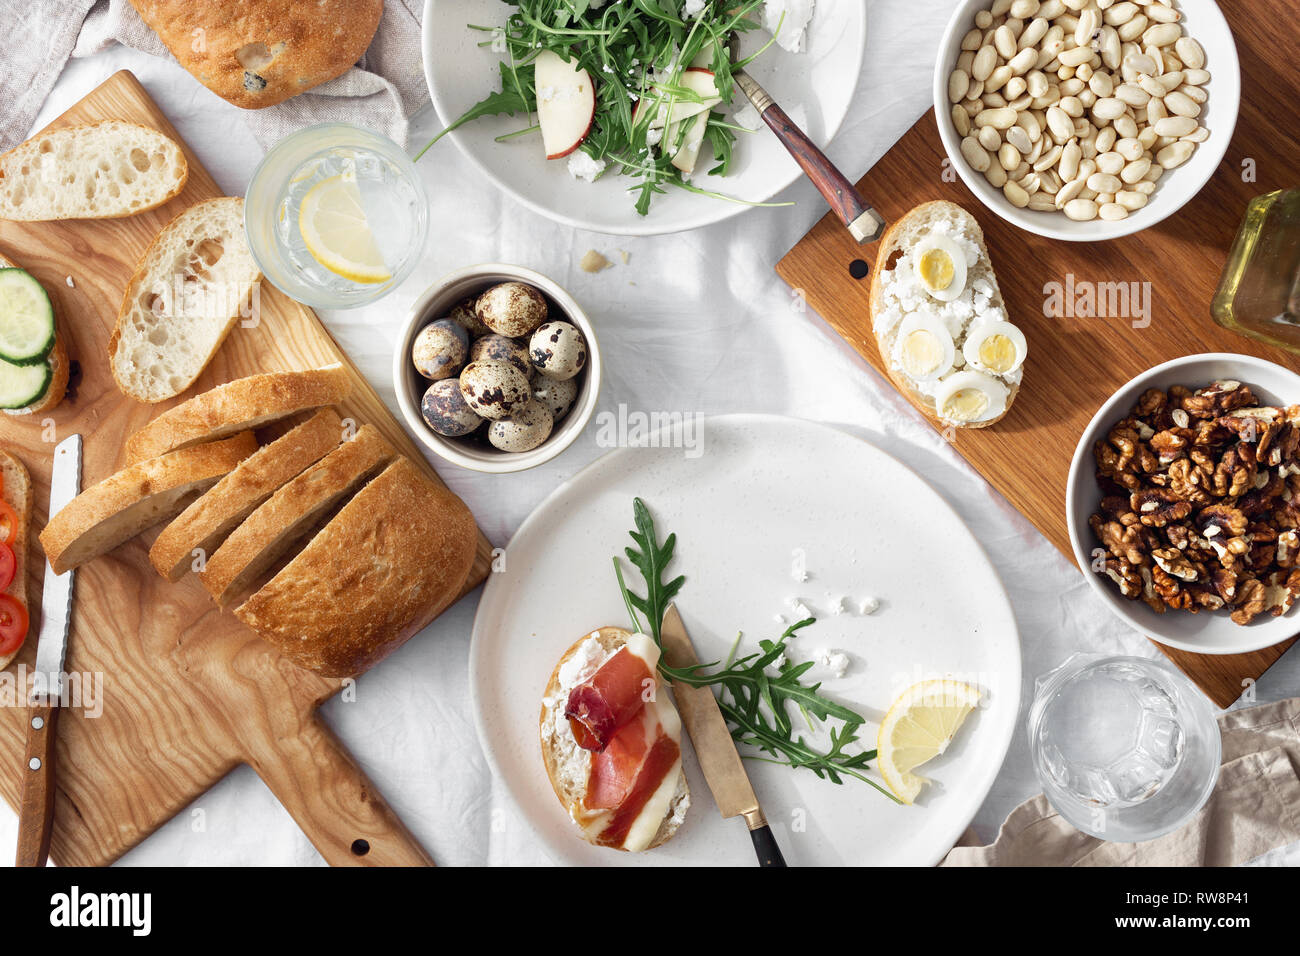 Una sana prima colazione o il pranzo snack. Panini al prosciutto, verdure e insalata di rucola su sfondo chiaro, vista dall'alto Foto Stock